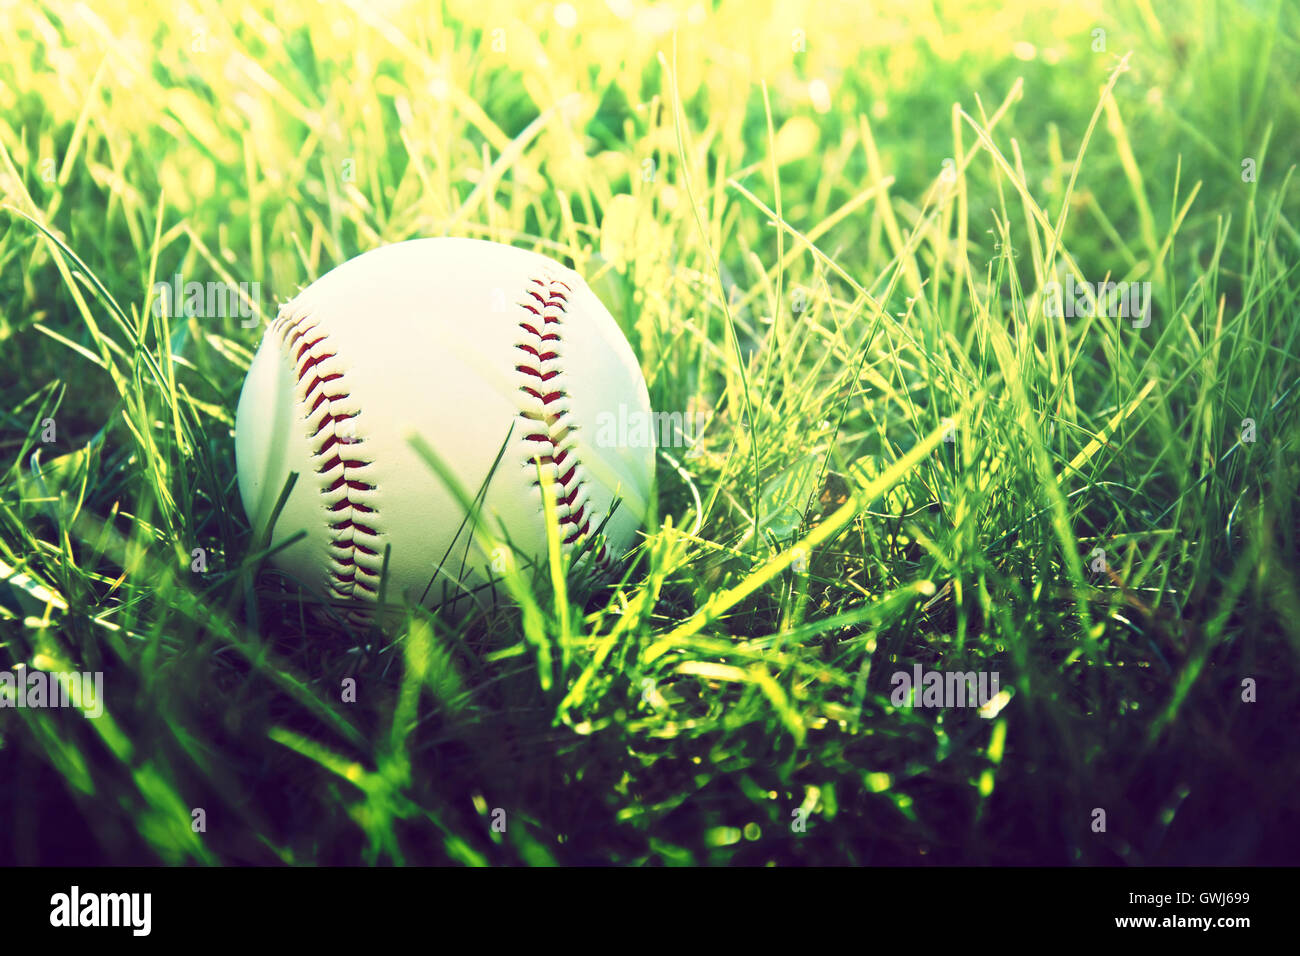 Juego de baseball. Pelota de béisbol en la hierba. Vintage Instagram fotografía. Foto de stock